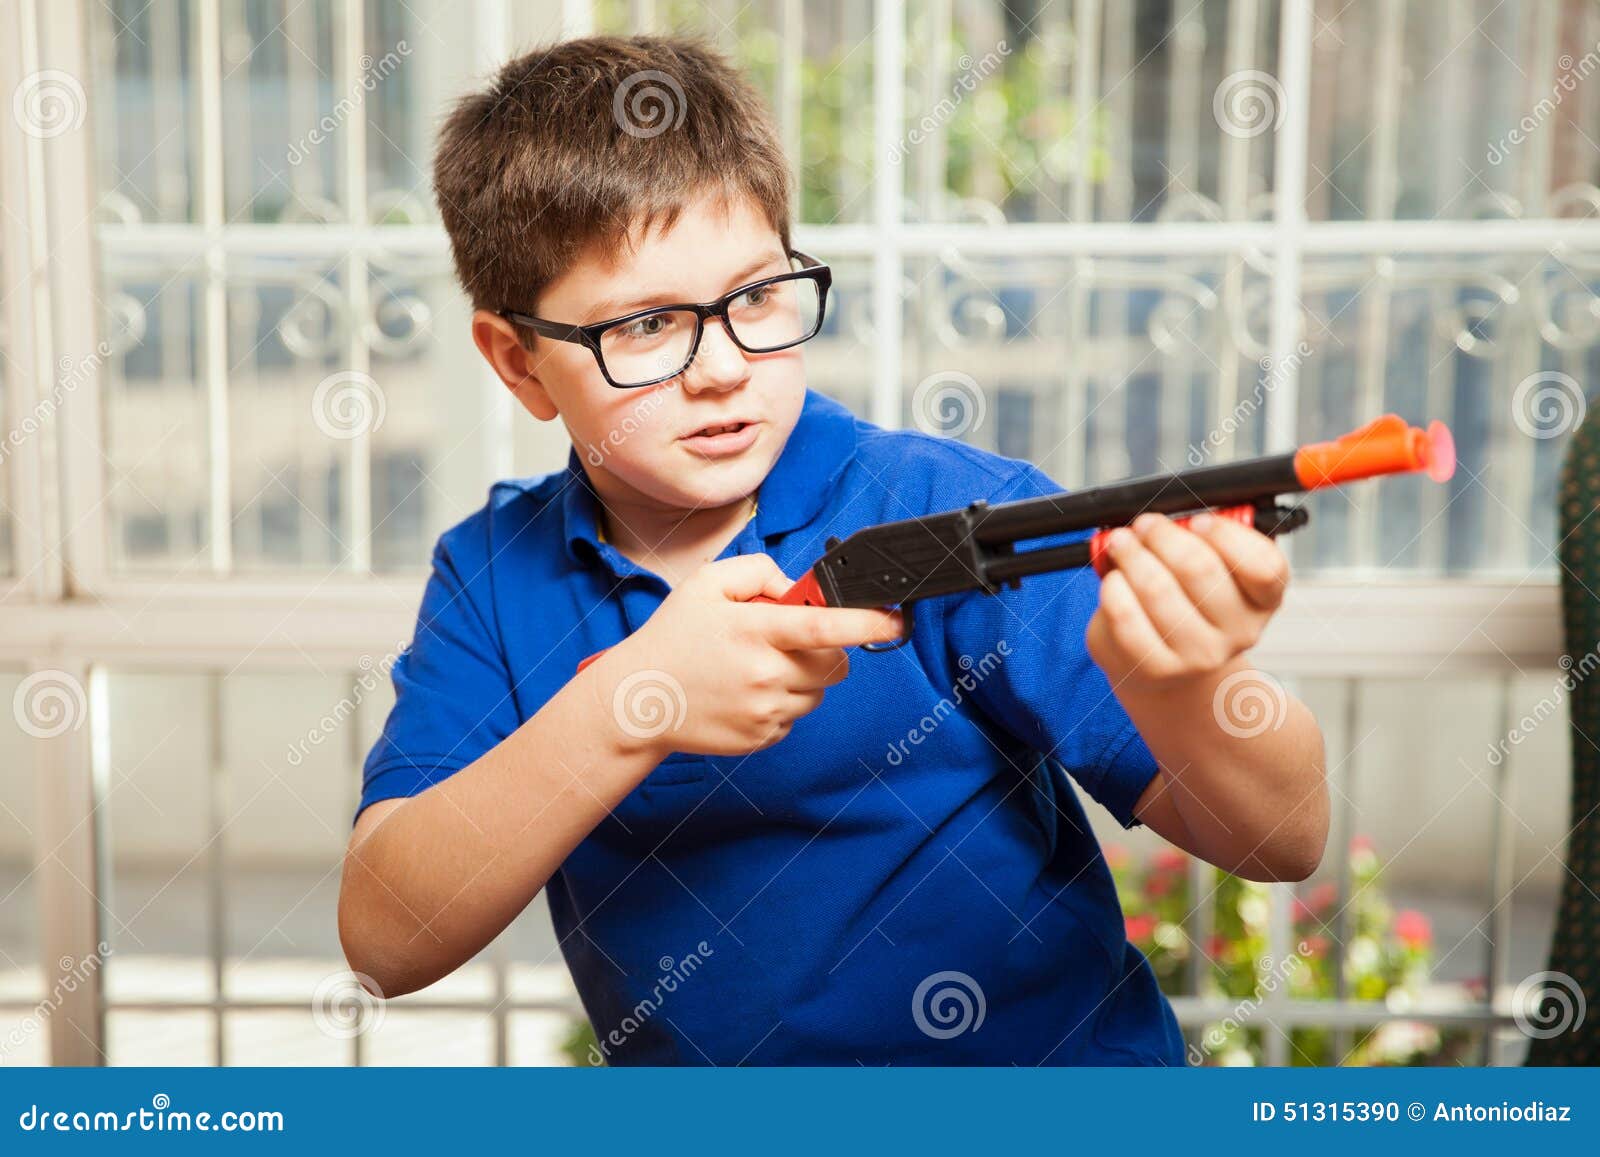 Vocês acham errado uma criança ter contato com armas de brinquedo